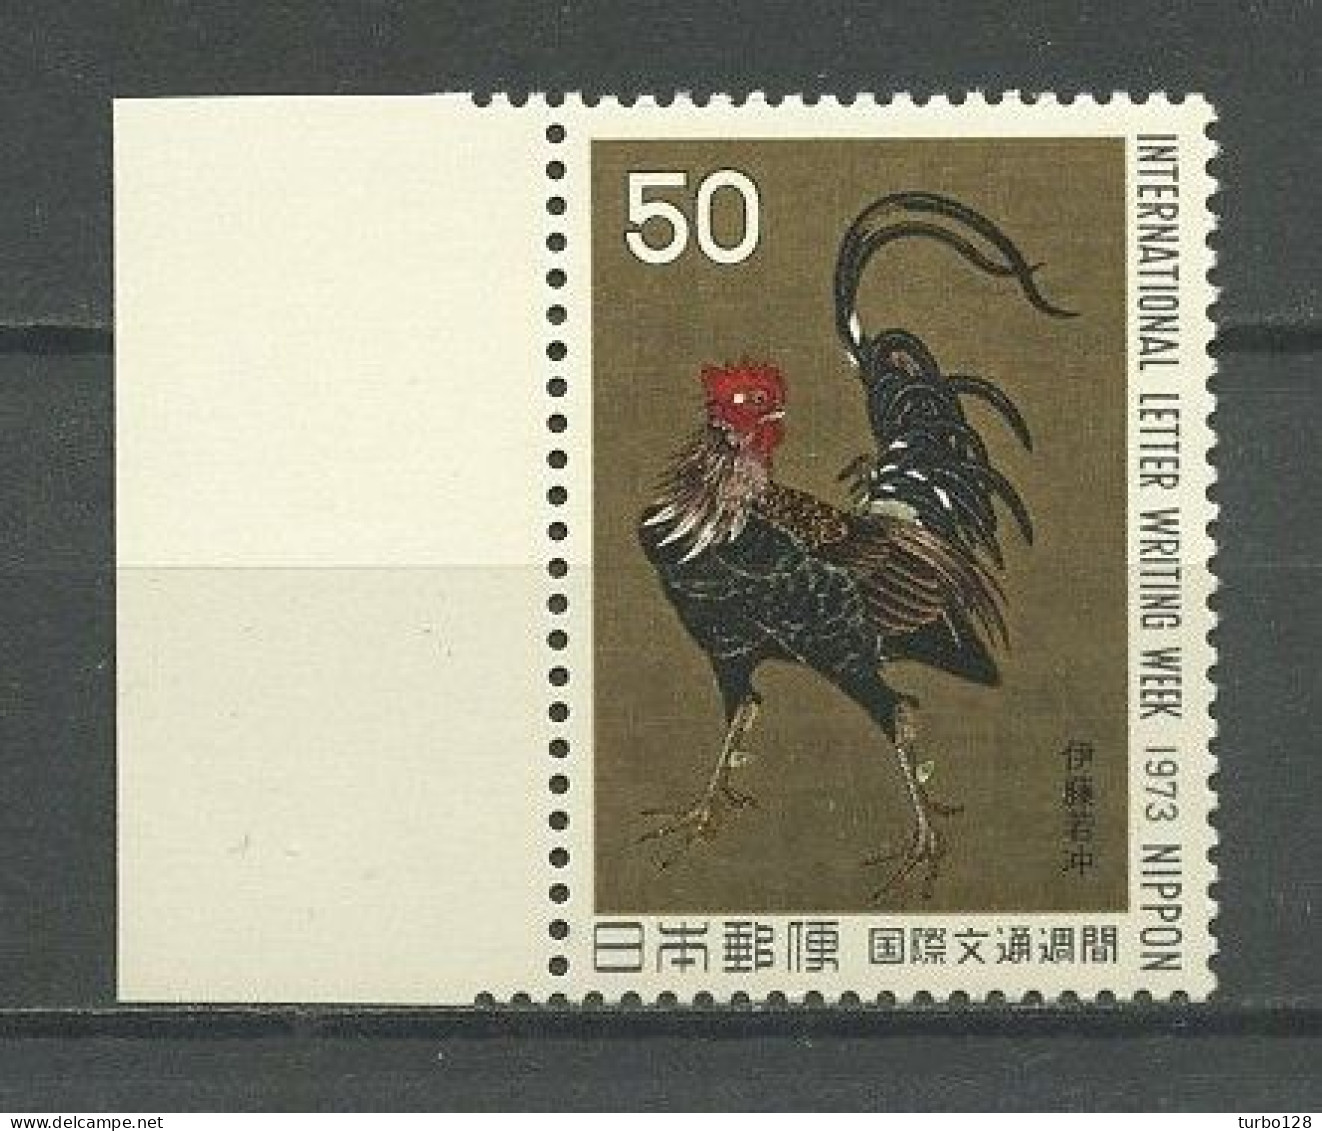 JAPON 1973 N° 1091 ** Neuf MNH Superbe C 1,25 € Faune Oiseaux Coq Guerrier De J. Ito La Lettre Peintures Birds Painting - Ongebruikt